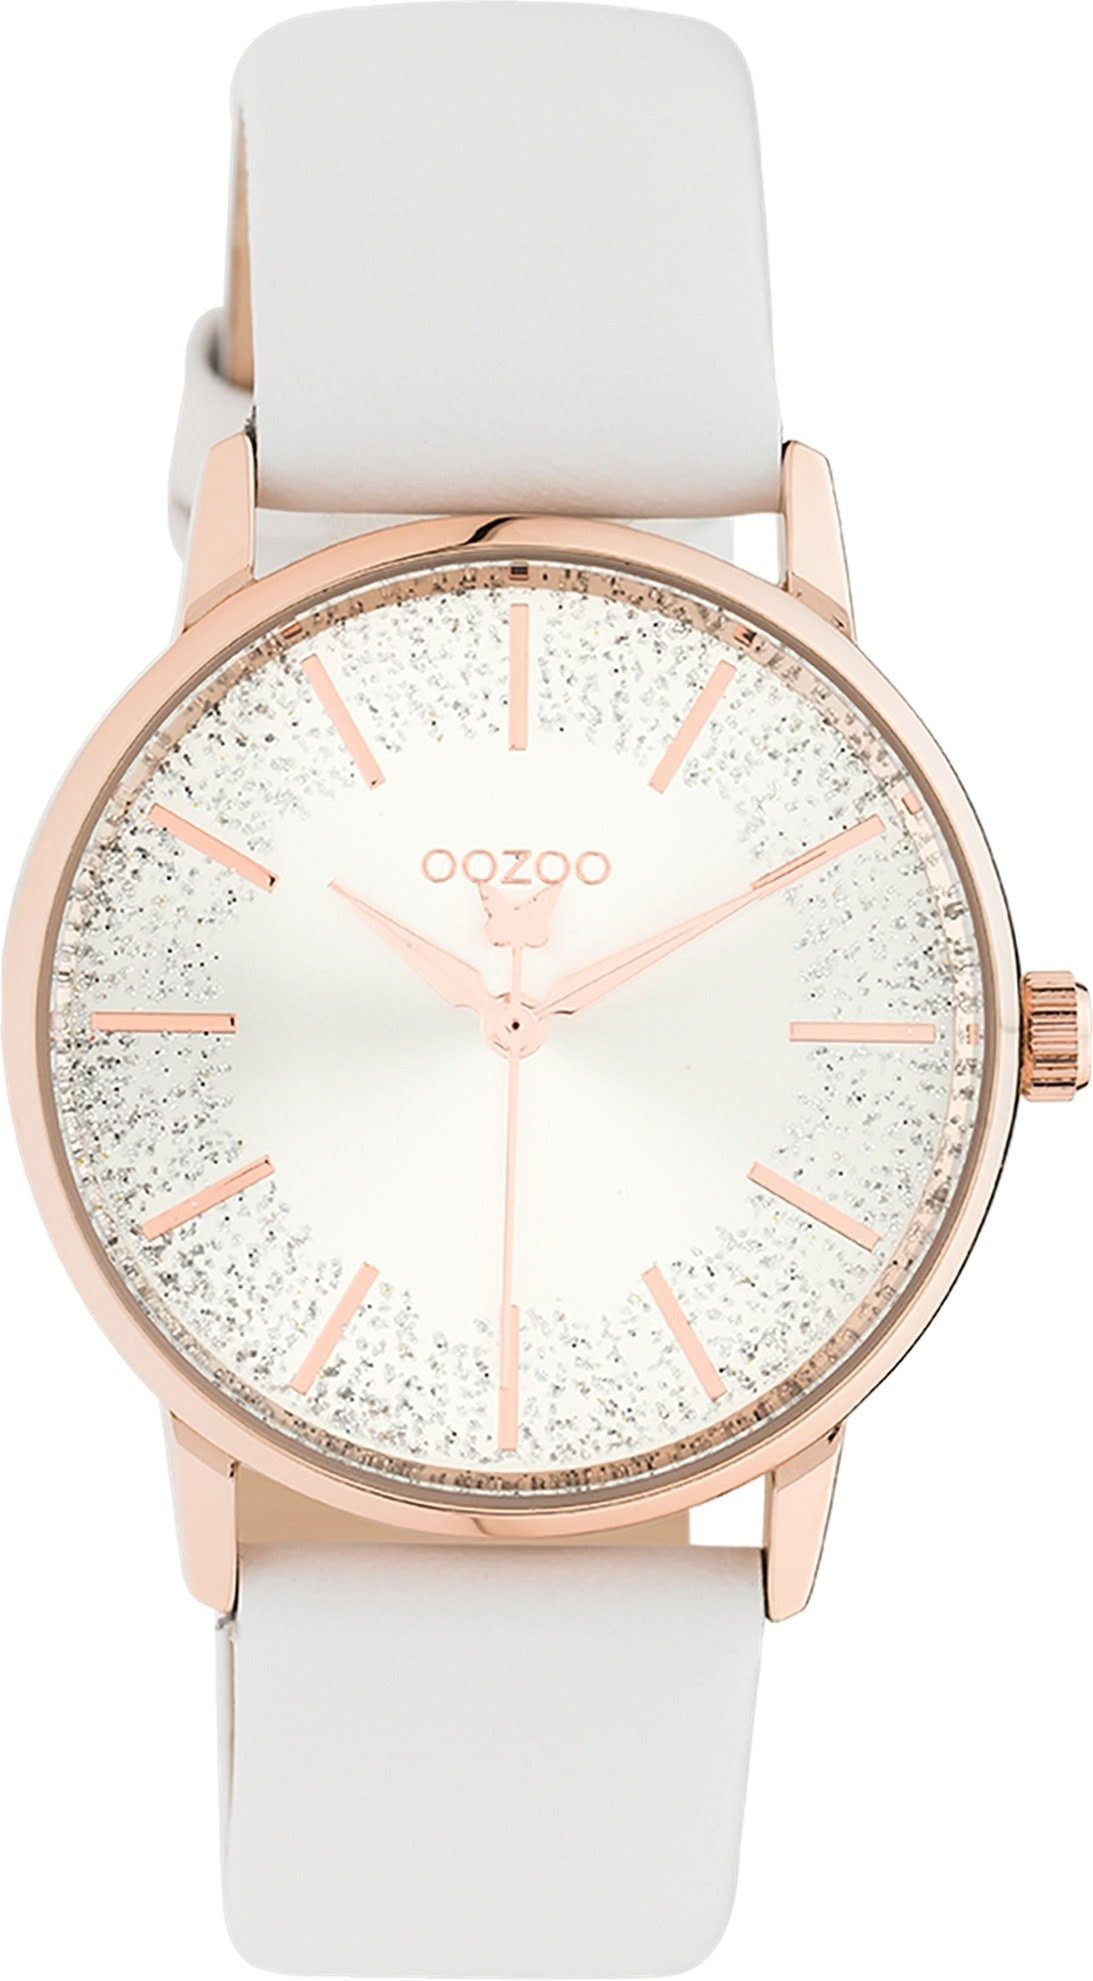 OOZOO Quarzuhr Oozoo Damen Armbanduhr weiß Analog, Damenuhr rund, mittel (ca. 35mm) Lederarmband, Fashion-Style